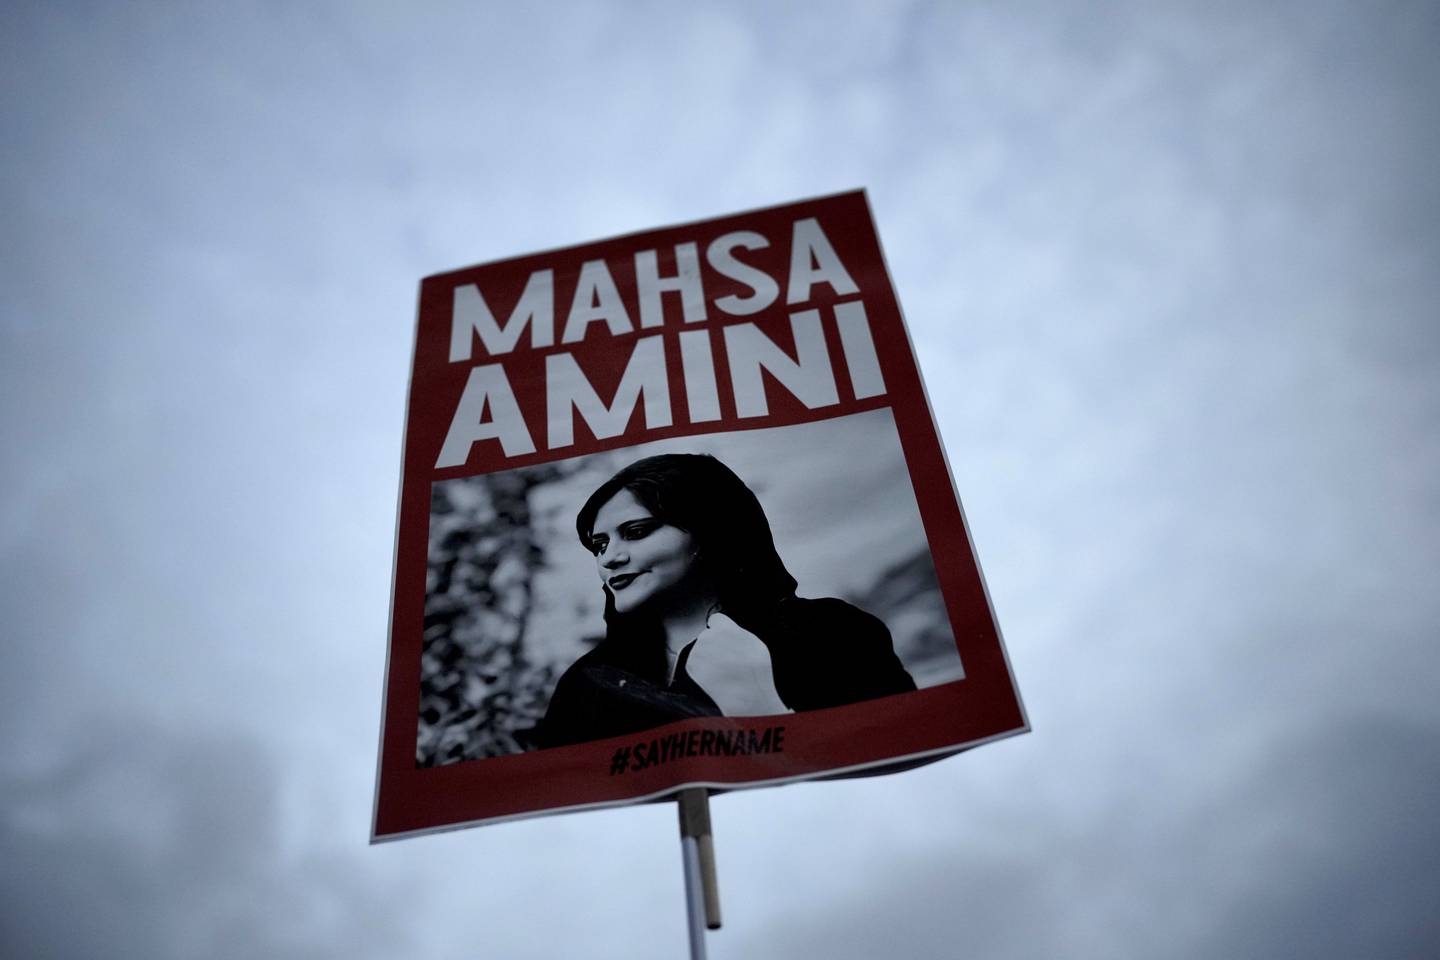 Det har vært store protester mot regimet i Iran siden den 22 år gamle kurdiske kvinnen Mahsa Amini døde i moralpolitiets varetekt 16. september. Foto: Markus Schreiber / AP / NTB